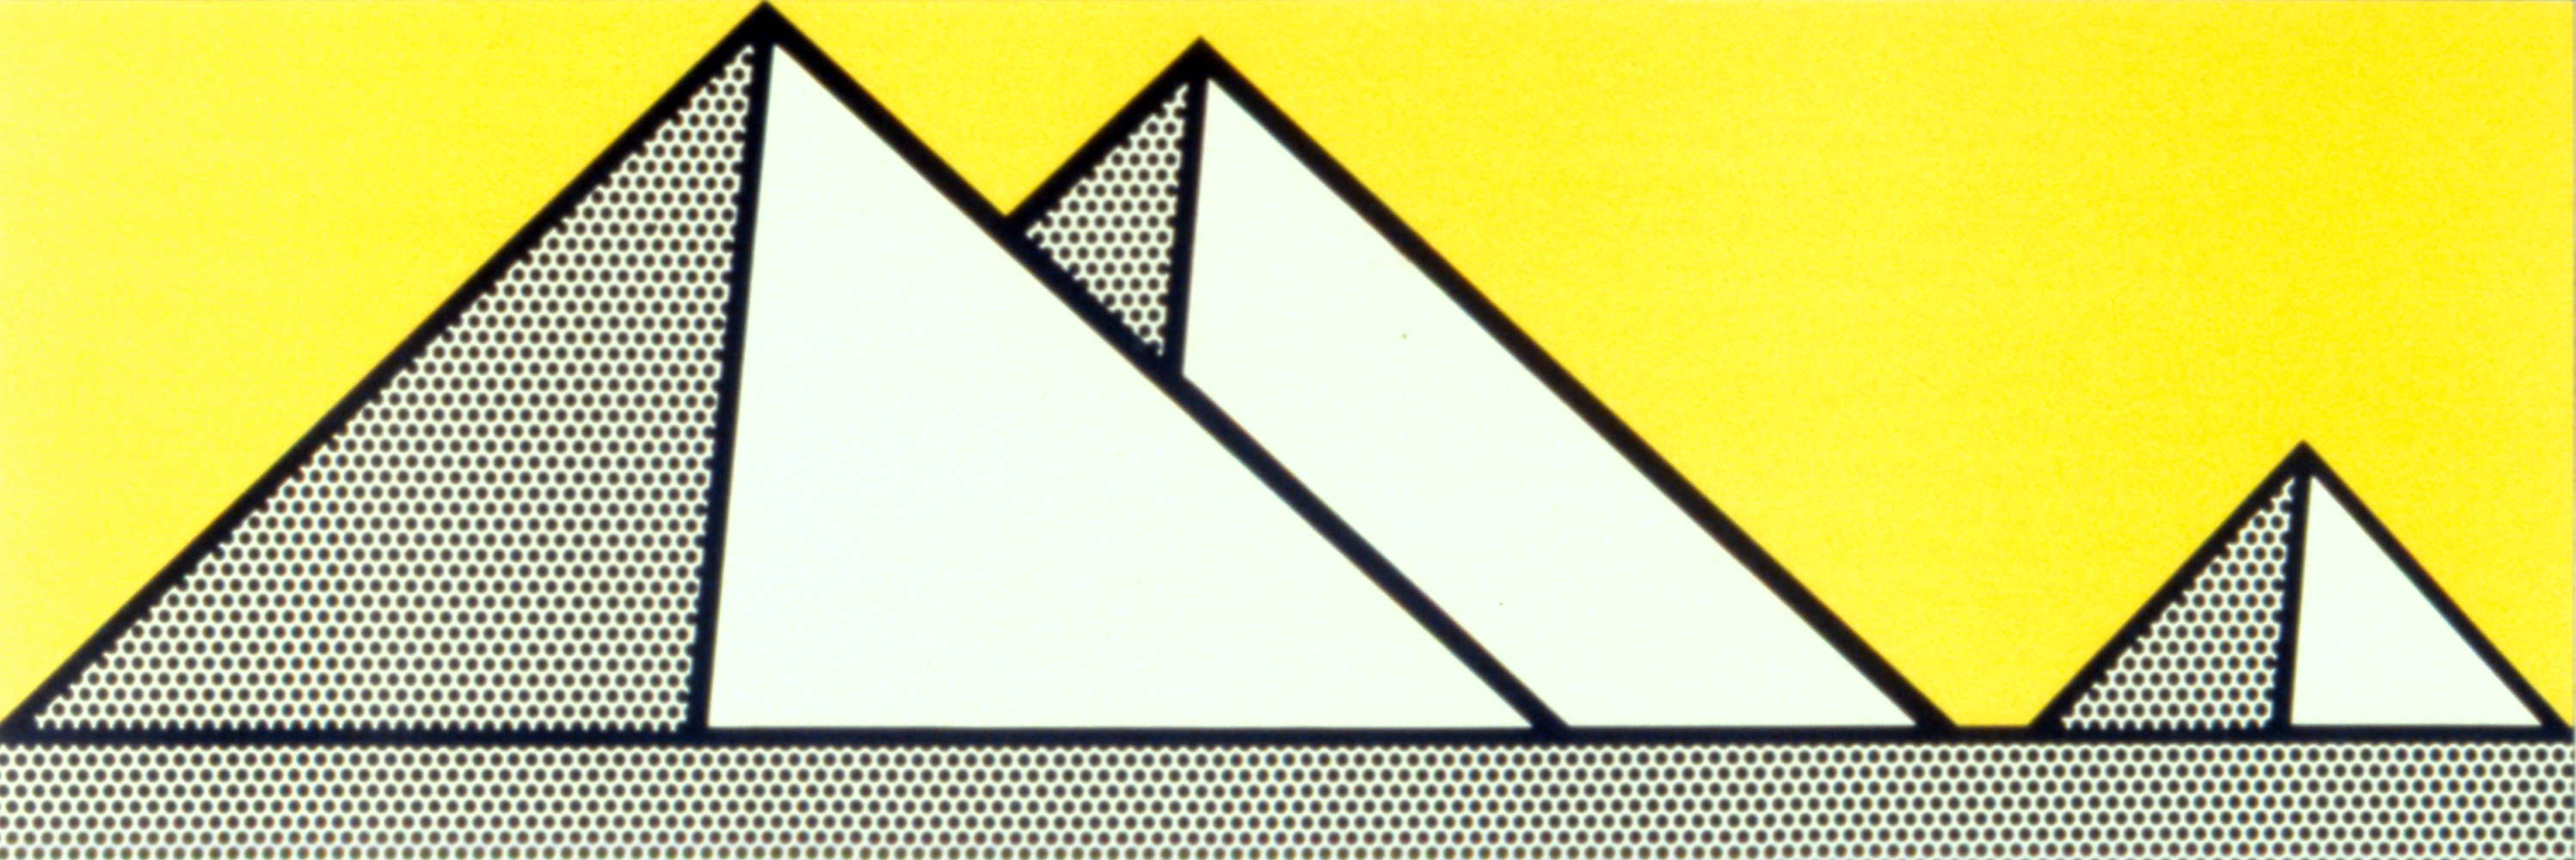 Pyramids by Roy Lichtenstein